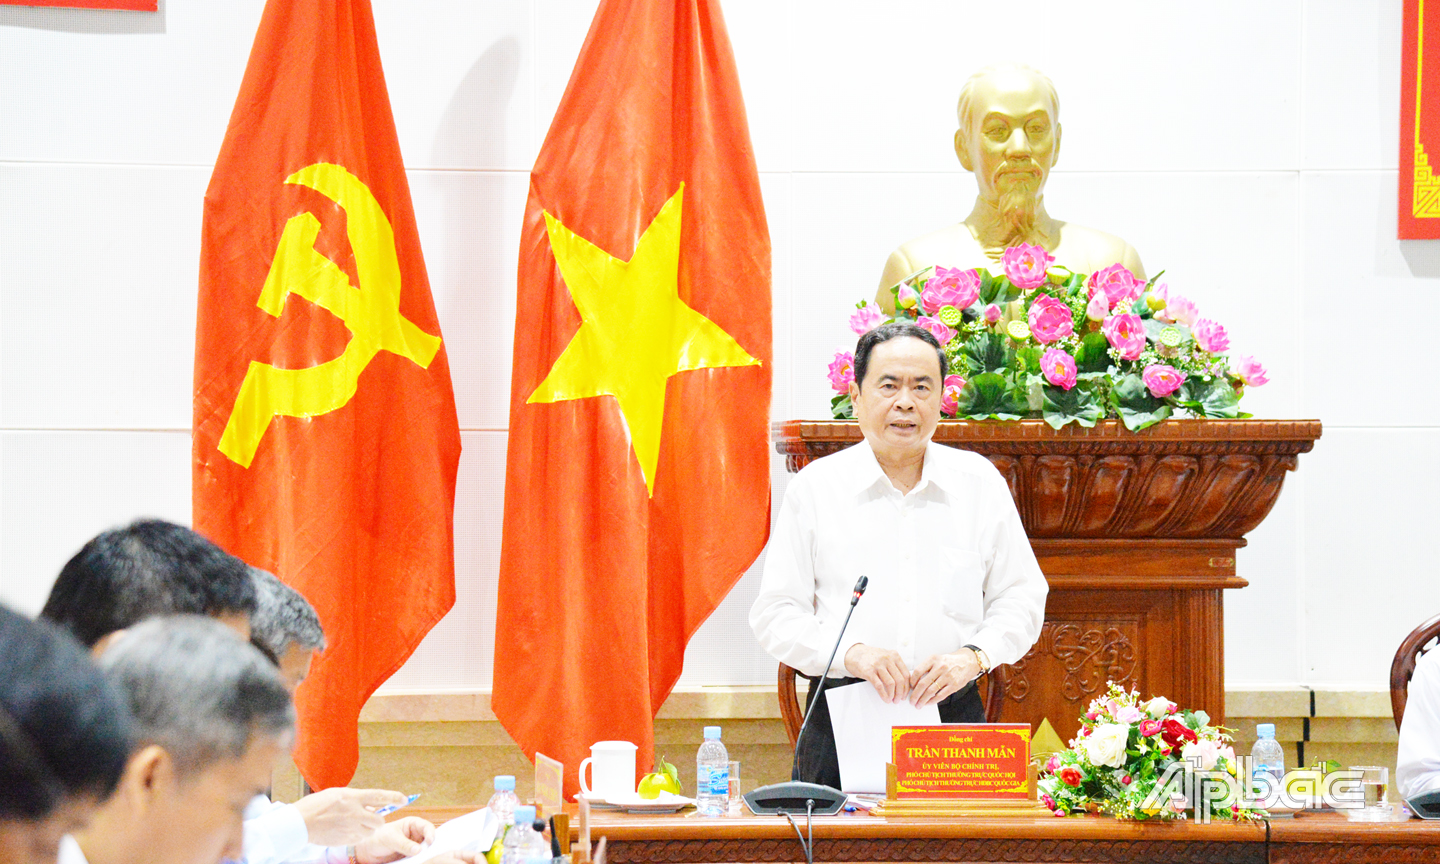 Phó Chủ tịch Quốc hội, Phó Chủ tịch Hội đồng bầu cử quốc gia Trần Thanh Mẫn ghi nhận sự cố gắng, chủ động, nghiêm túc của Ủy ban bầu cử tỉnh Tiền Giang trong công tác chuẩn  cuộc bầu cử. 